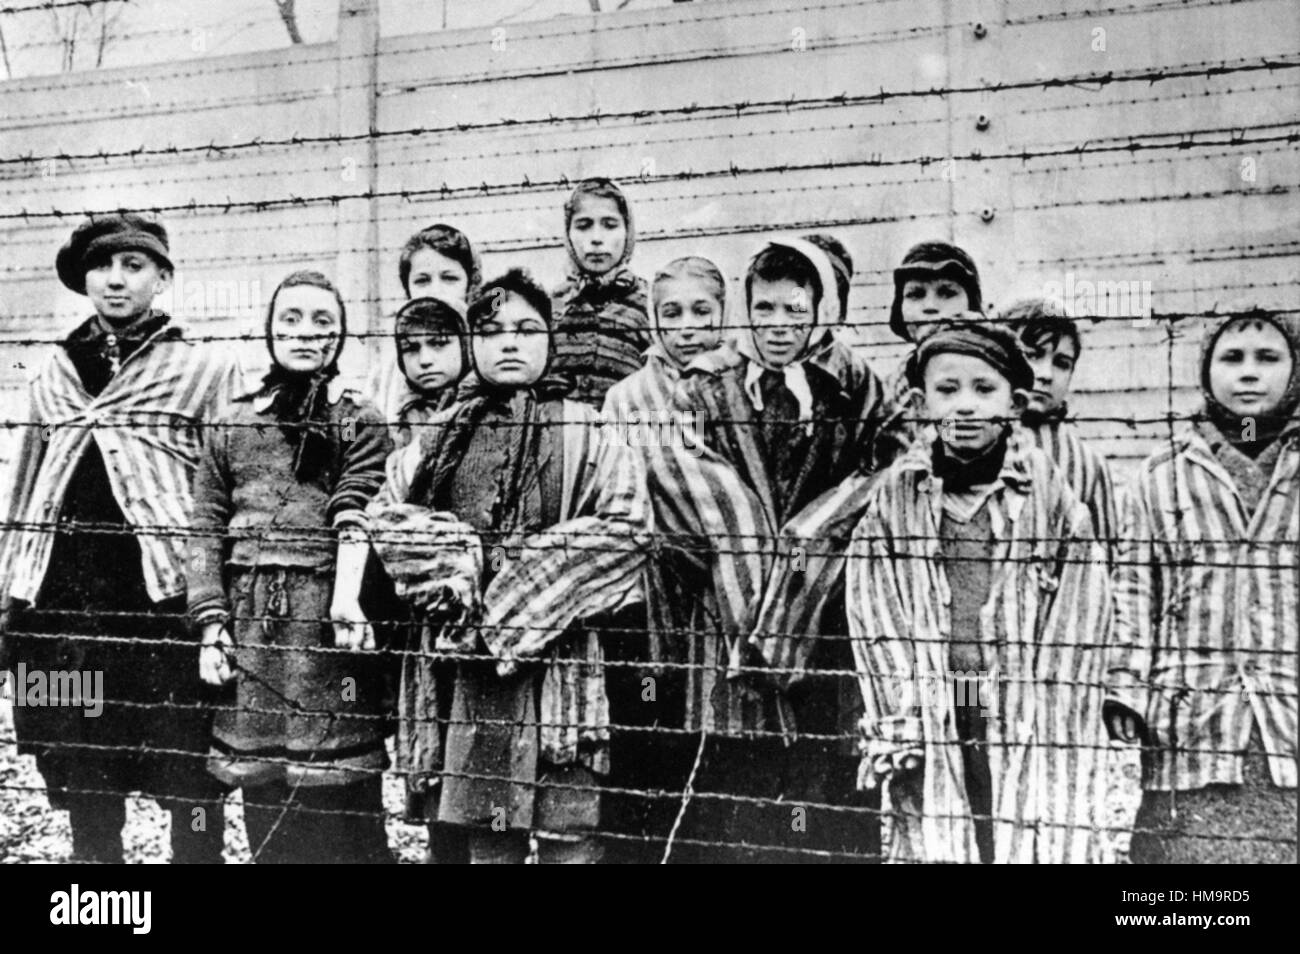 CAMP DE CONCENTRATION D'AUSCHWITZ encore du film de l'armée soviétique sur les femmes et les enfants encore en état de choc après la libération de l'Armée rouge en janvier 1945 Banque D'Images